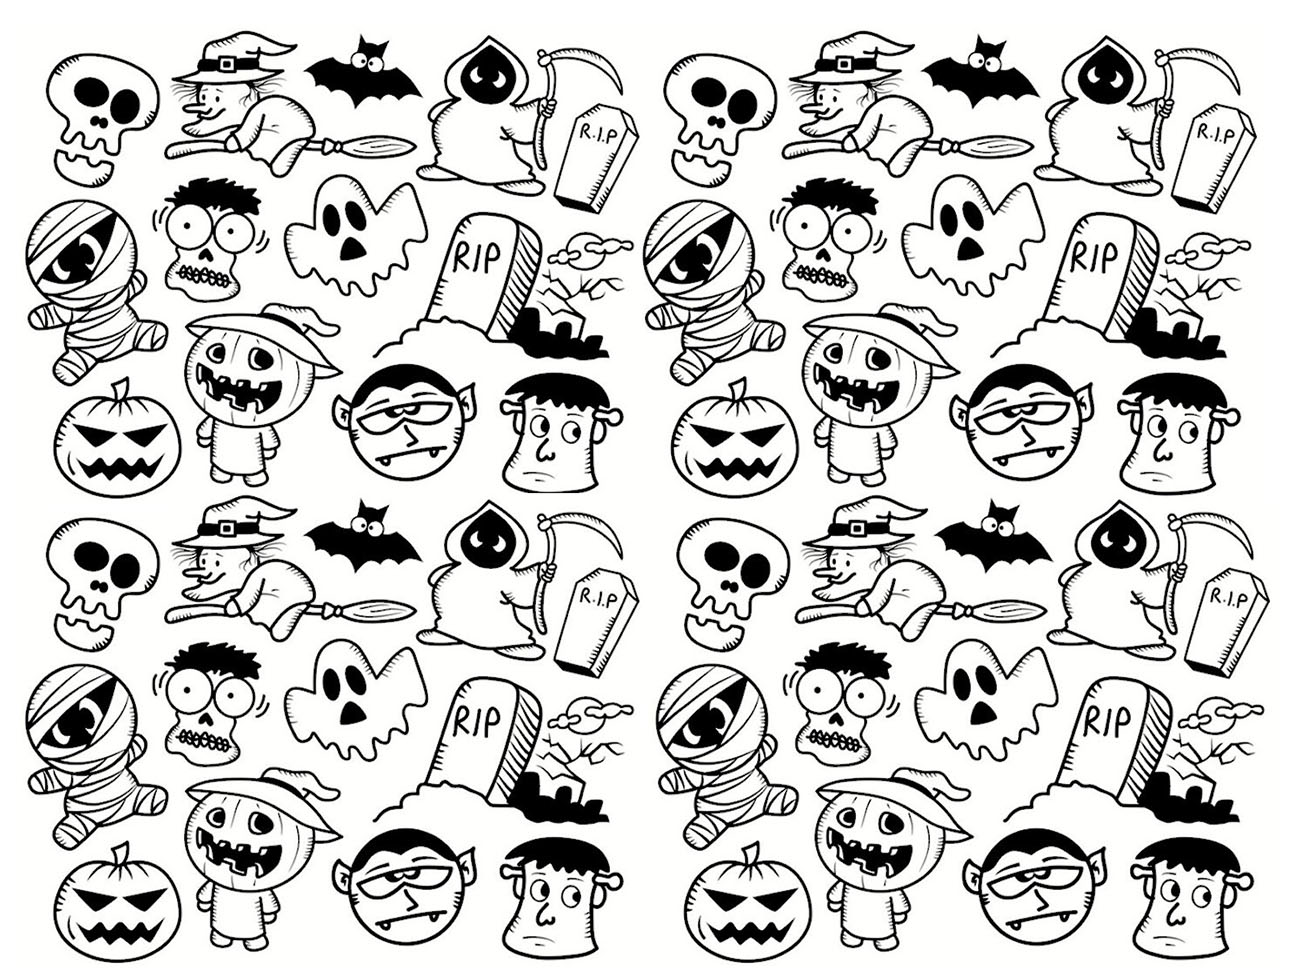 Dibujo de Halloween gratis para descargar y colorear